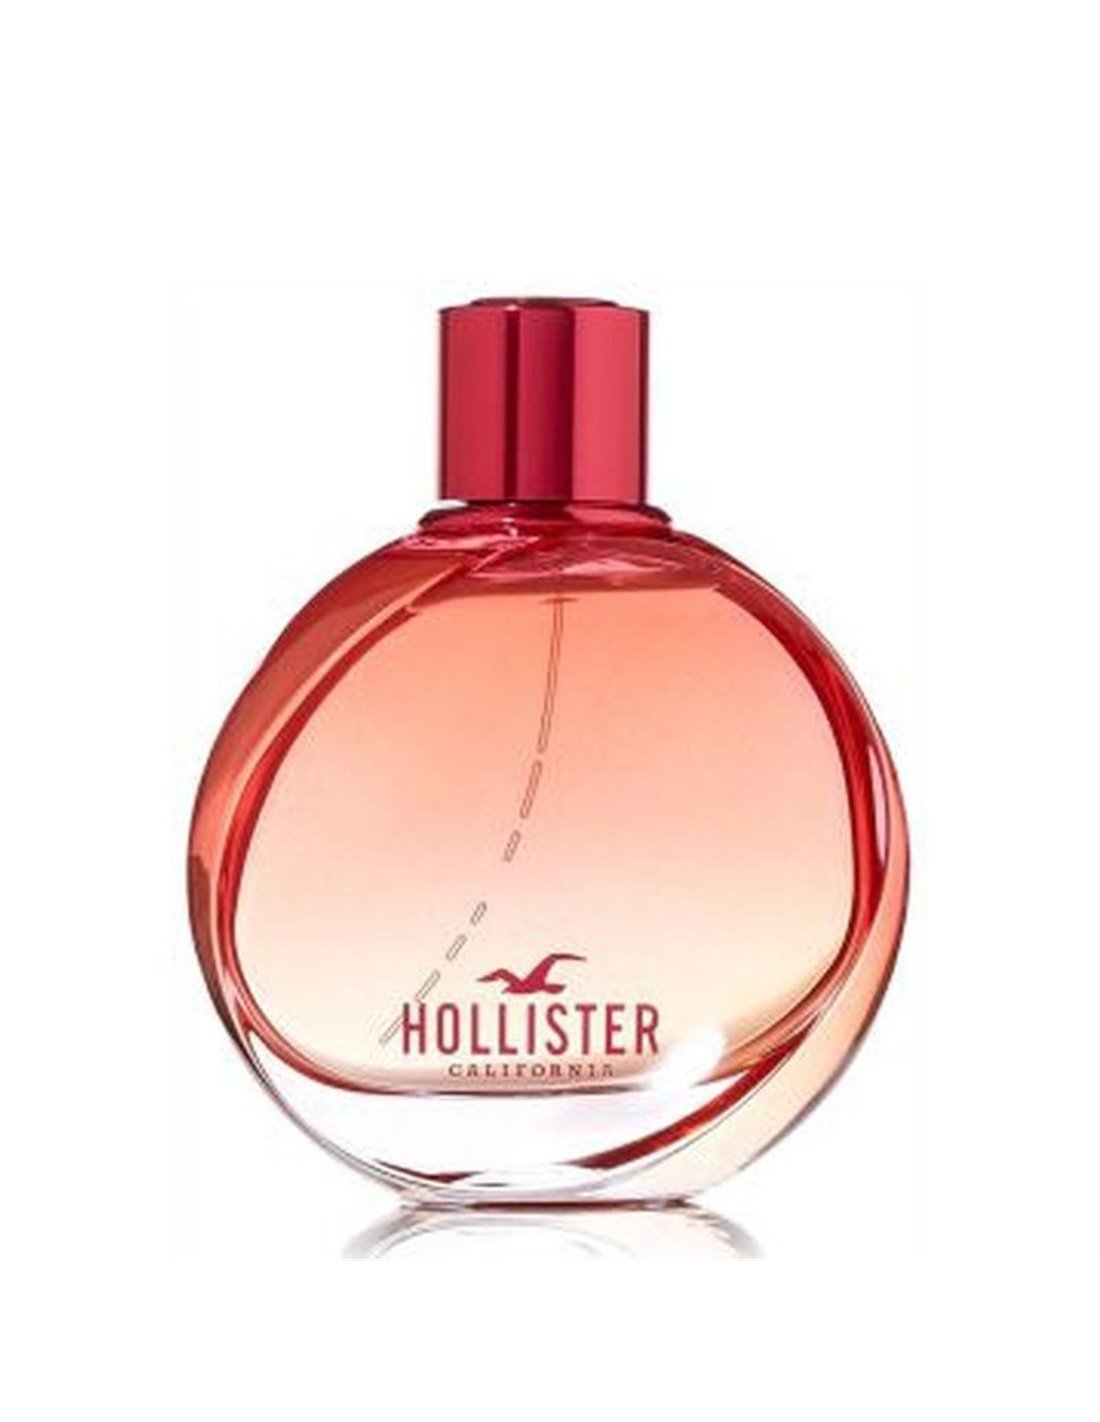 Hollister California Parfum | vlr.eng.br